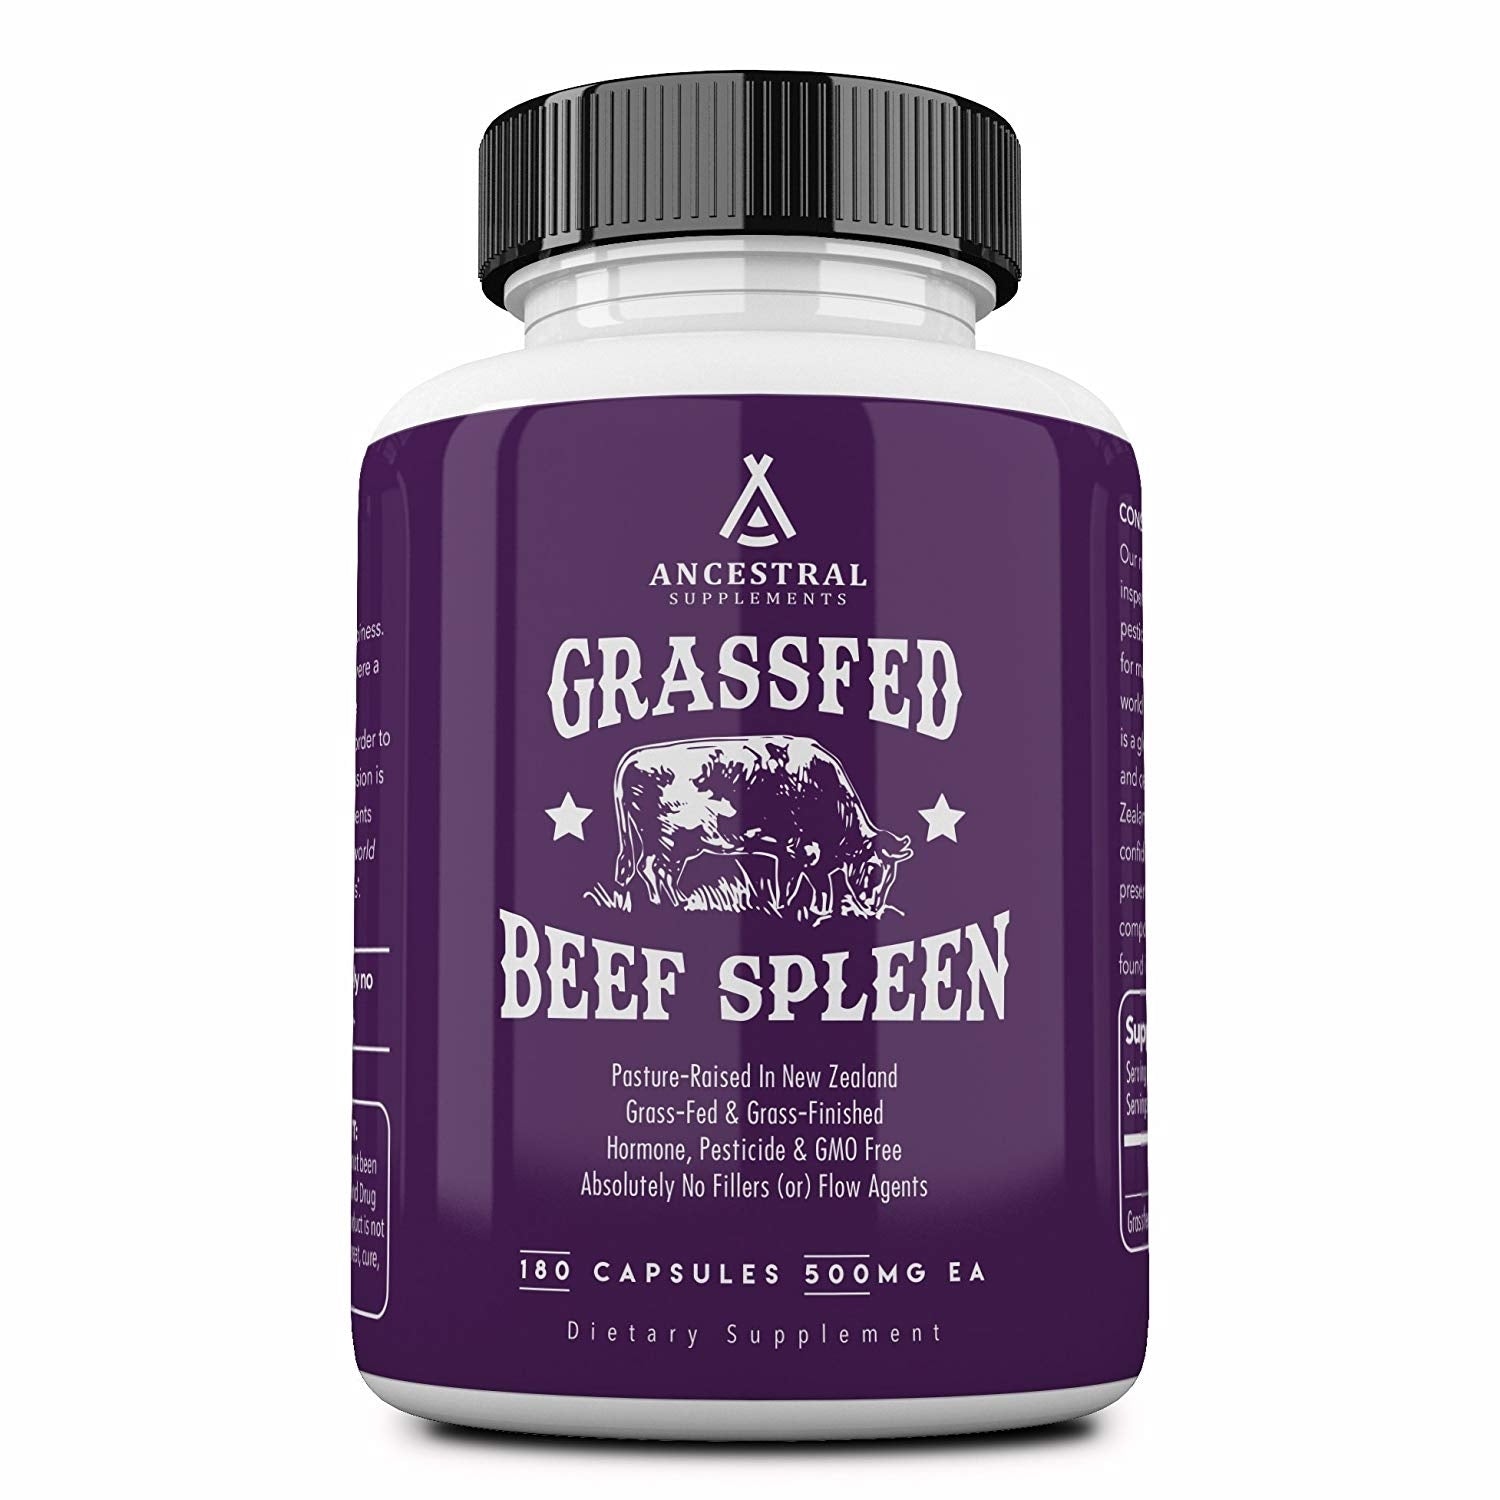 Grassfed Beef Spleen - 180 capsules